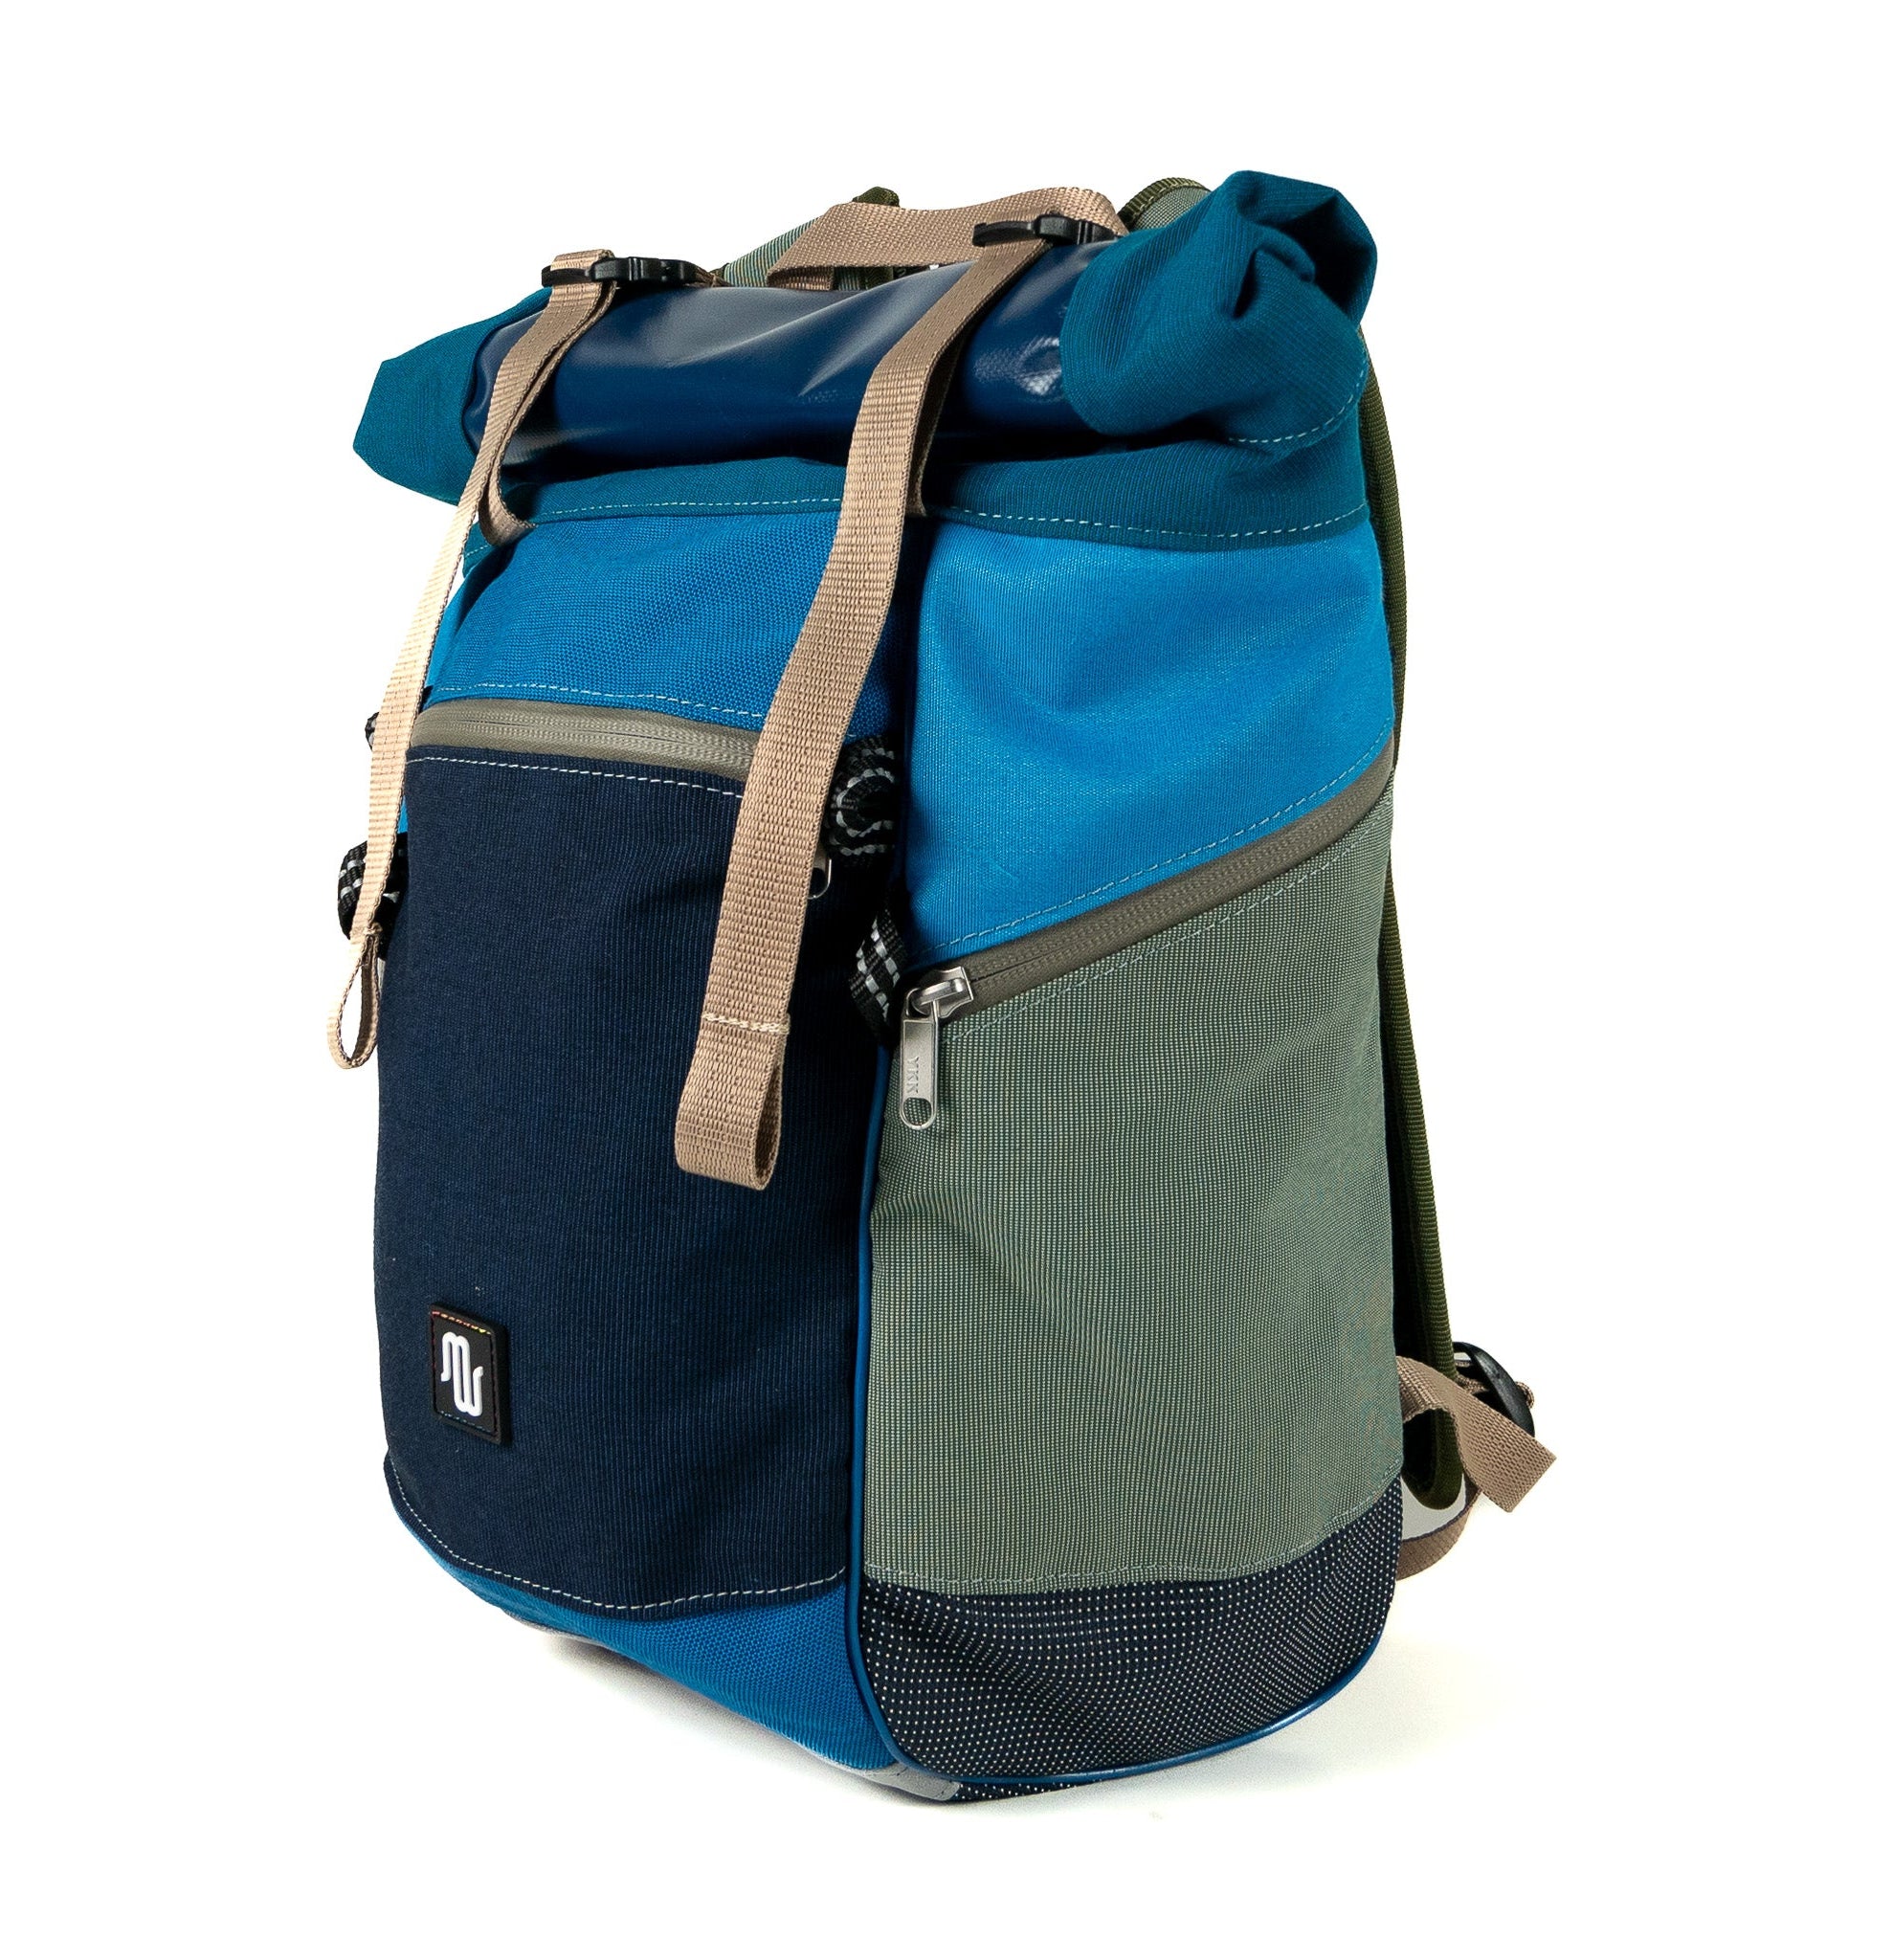 Backpack - BUDDY No. 146 - Backpack - medencebag